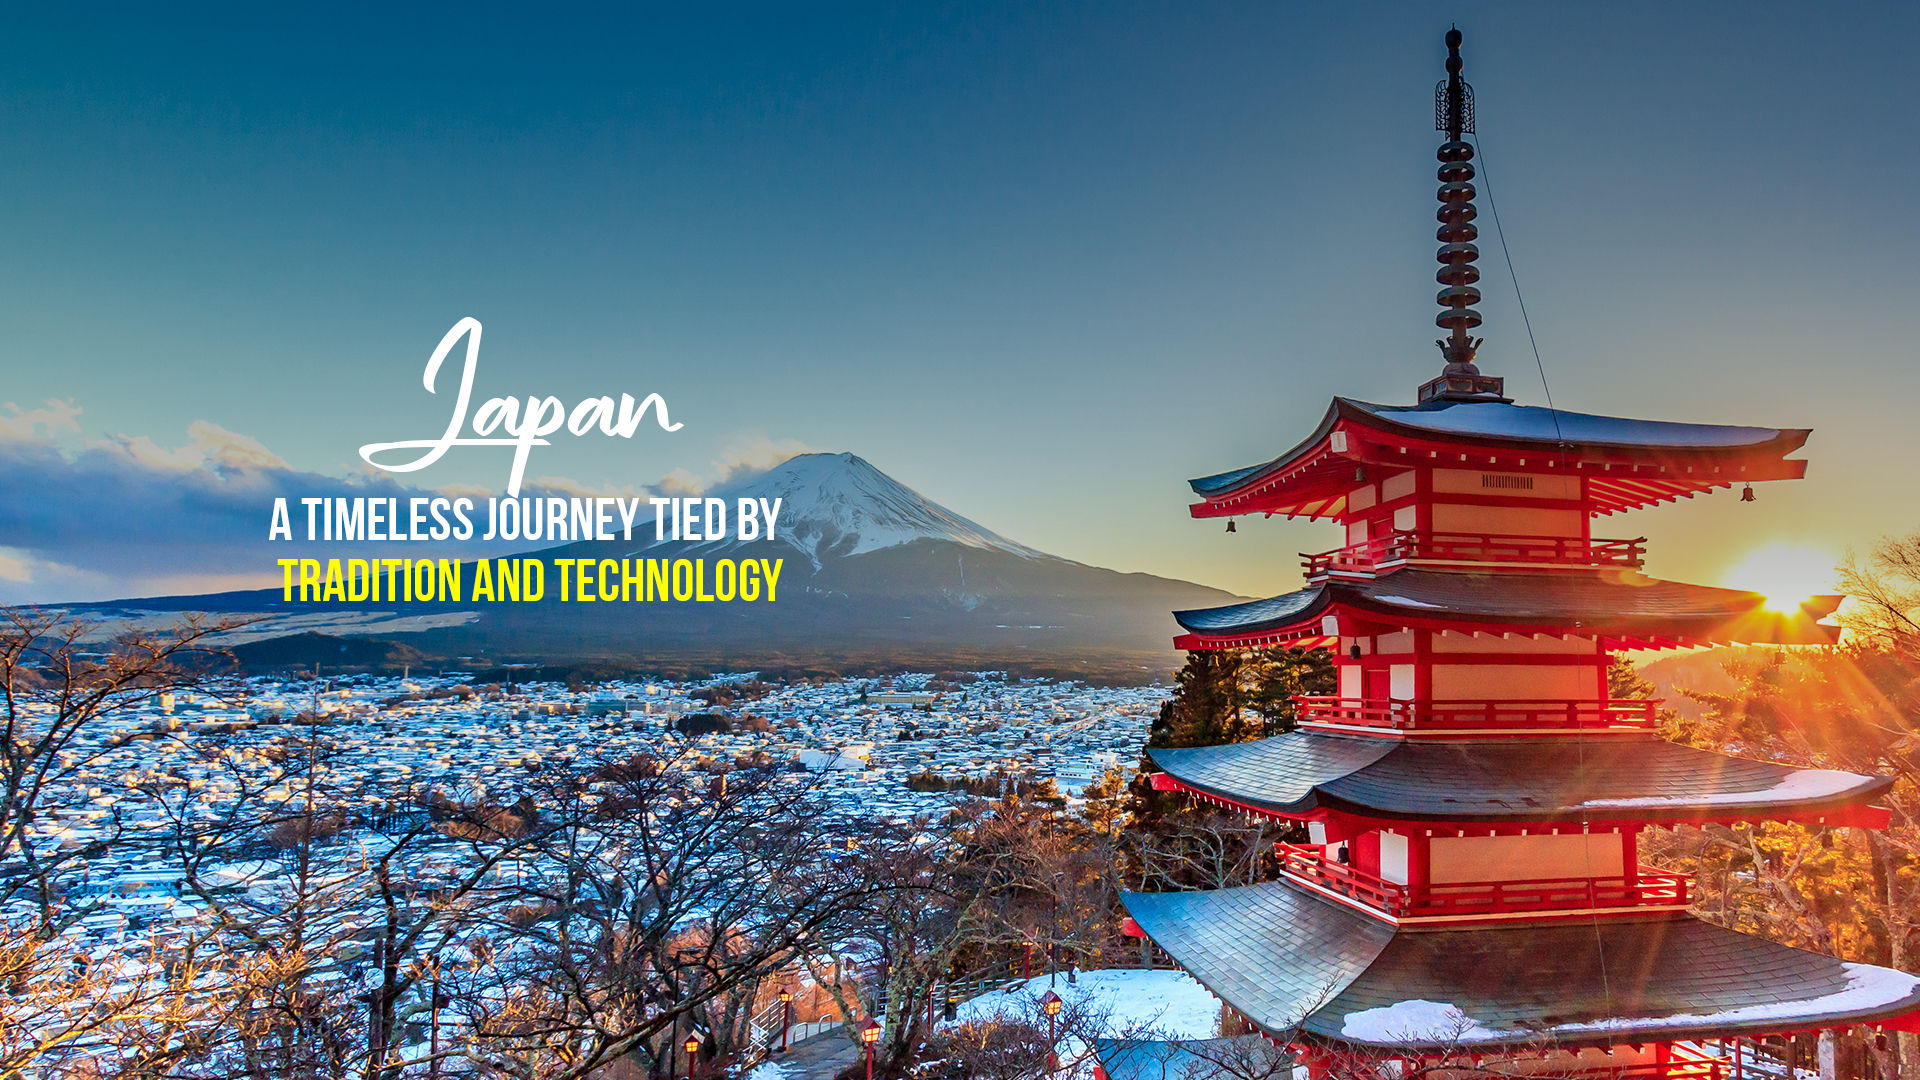 japan tourism deals